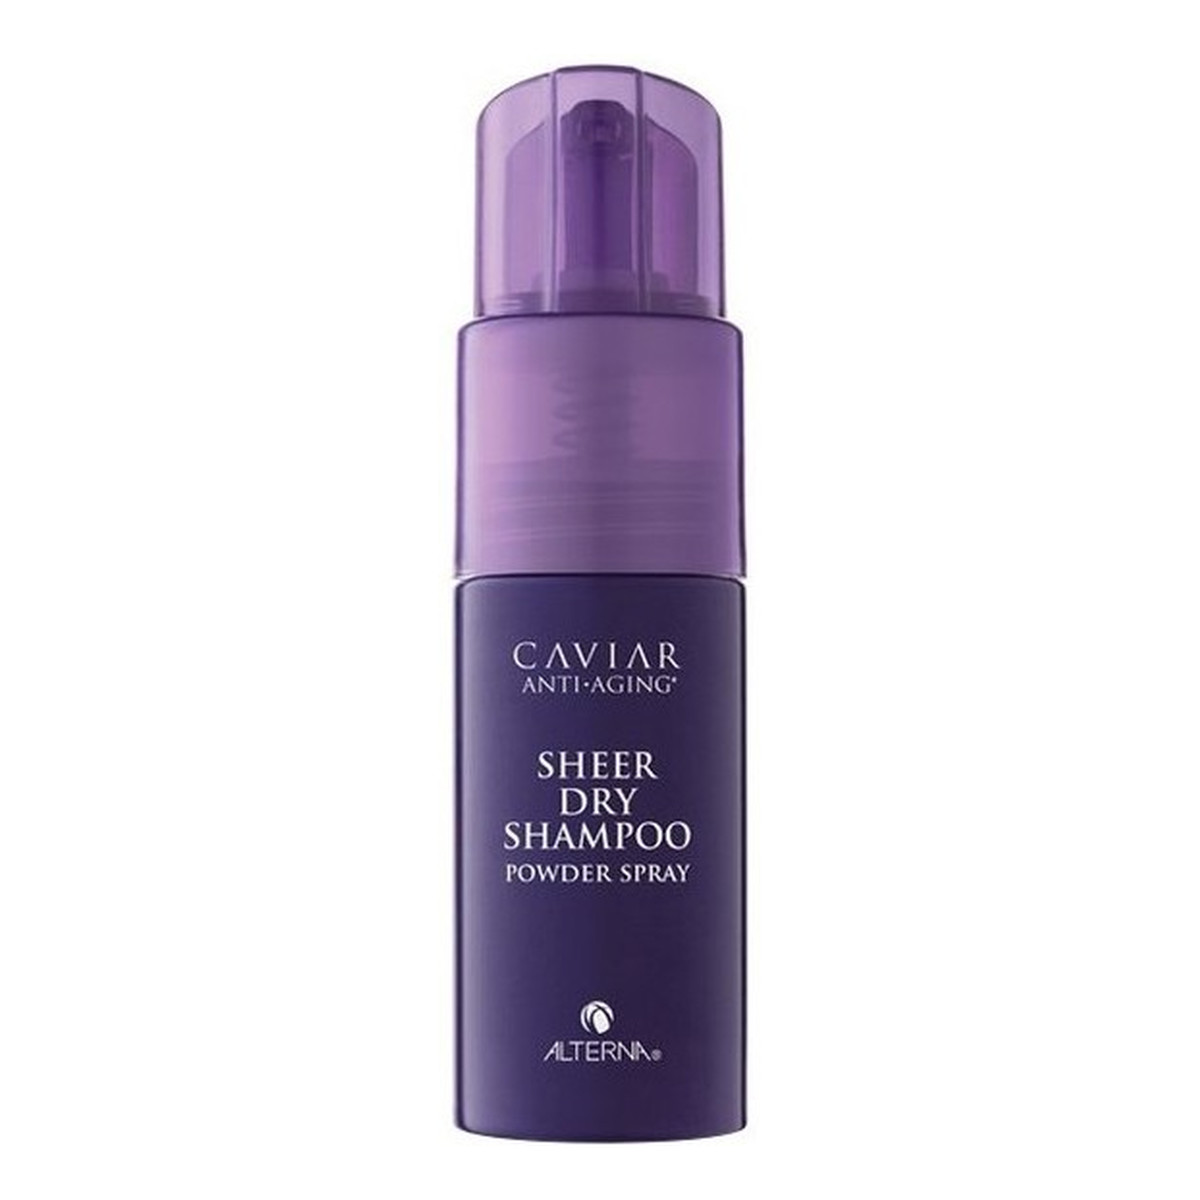 Alterna Caviar Anti-Aging Sheer Dry Shampoo Powder Spray Suchy szampon do włosów 34g